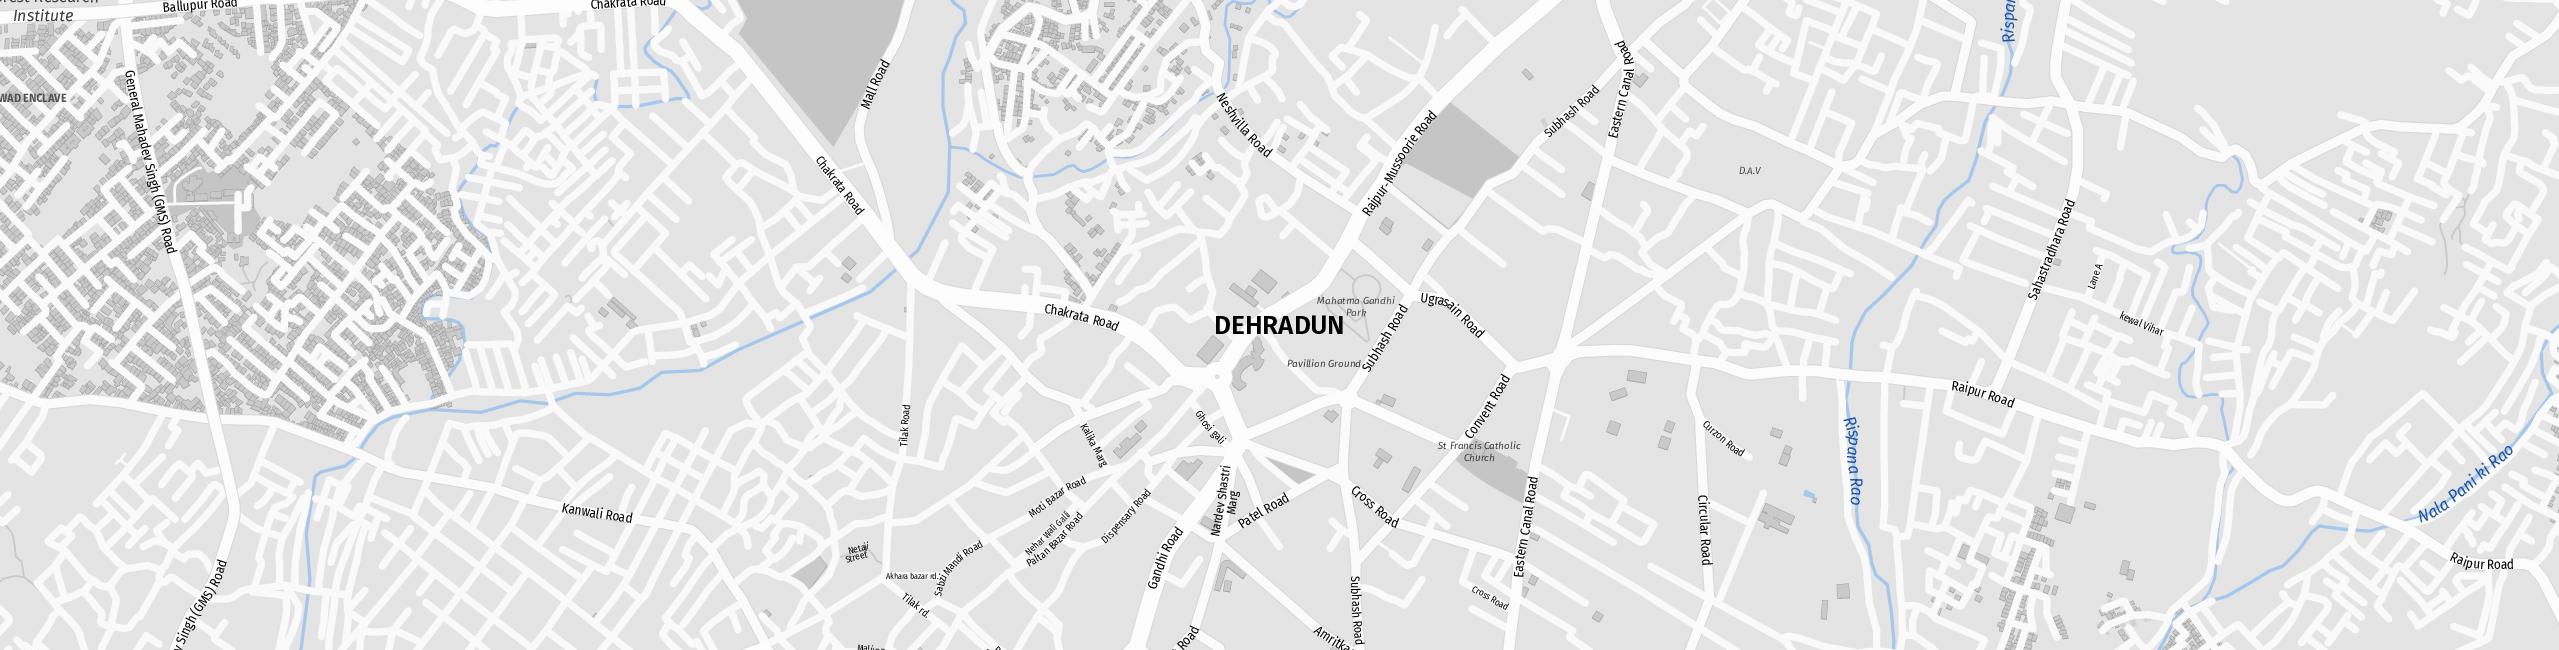 Stadtplan Dehradun zum Downloaden.